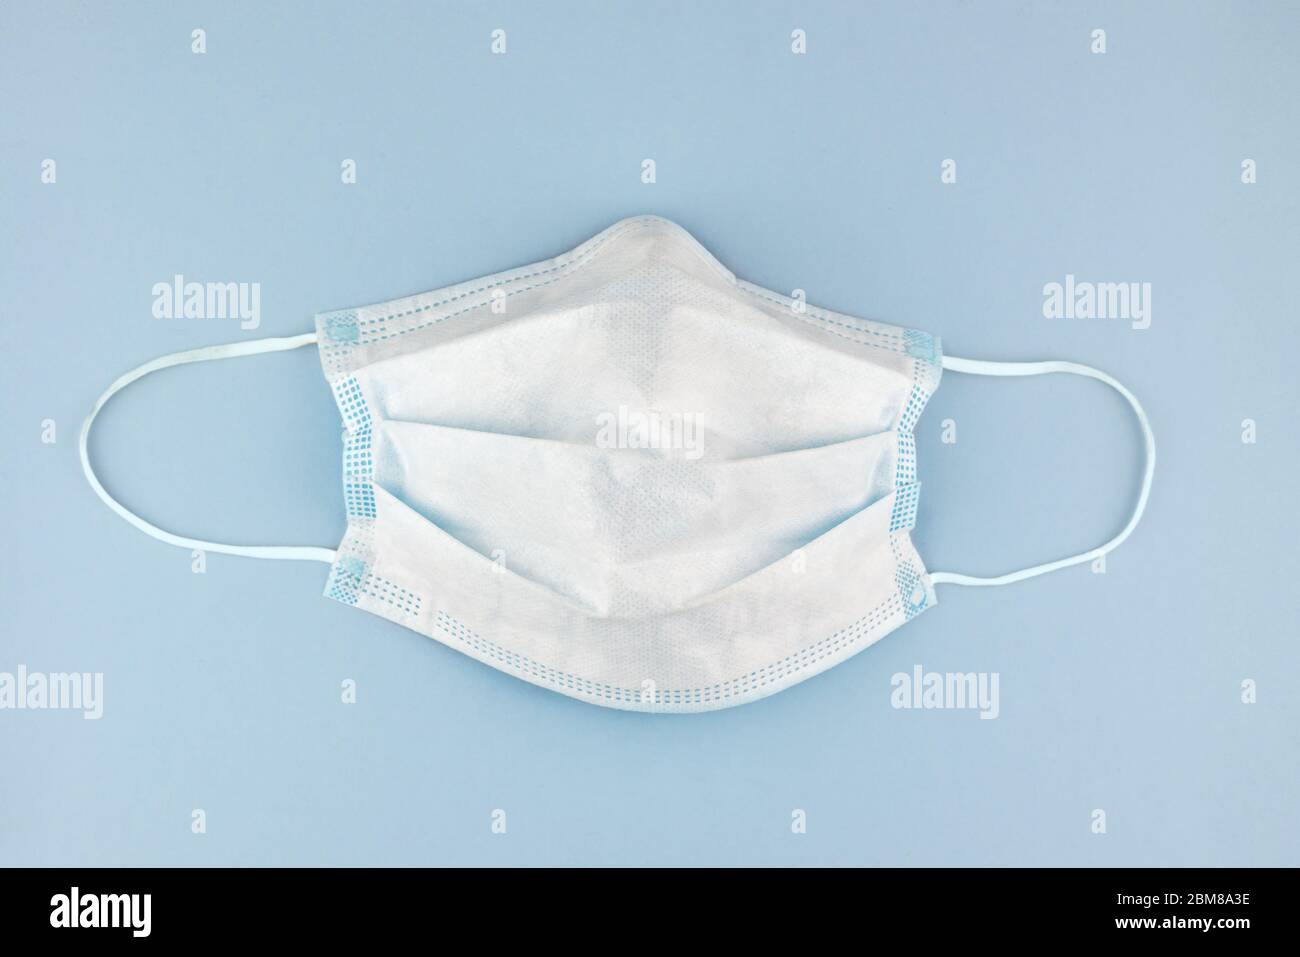 máscara de protección quirúrgica contra virus, como el coronavirus, sobre fondo azul pálido Foto de stock